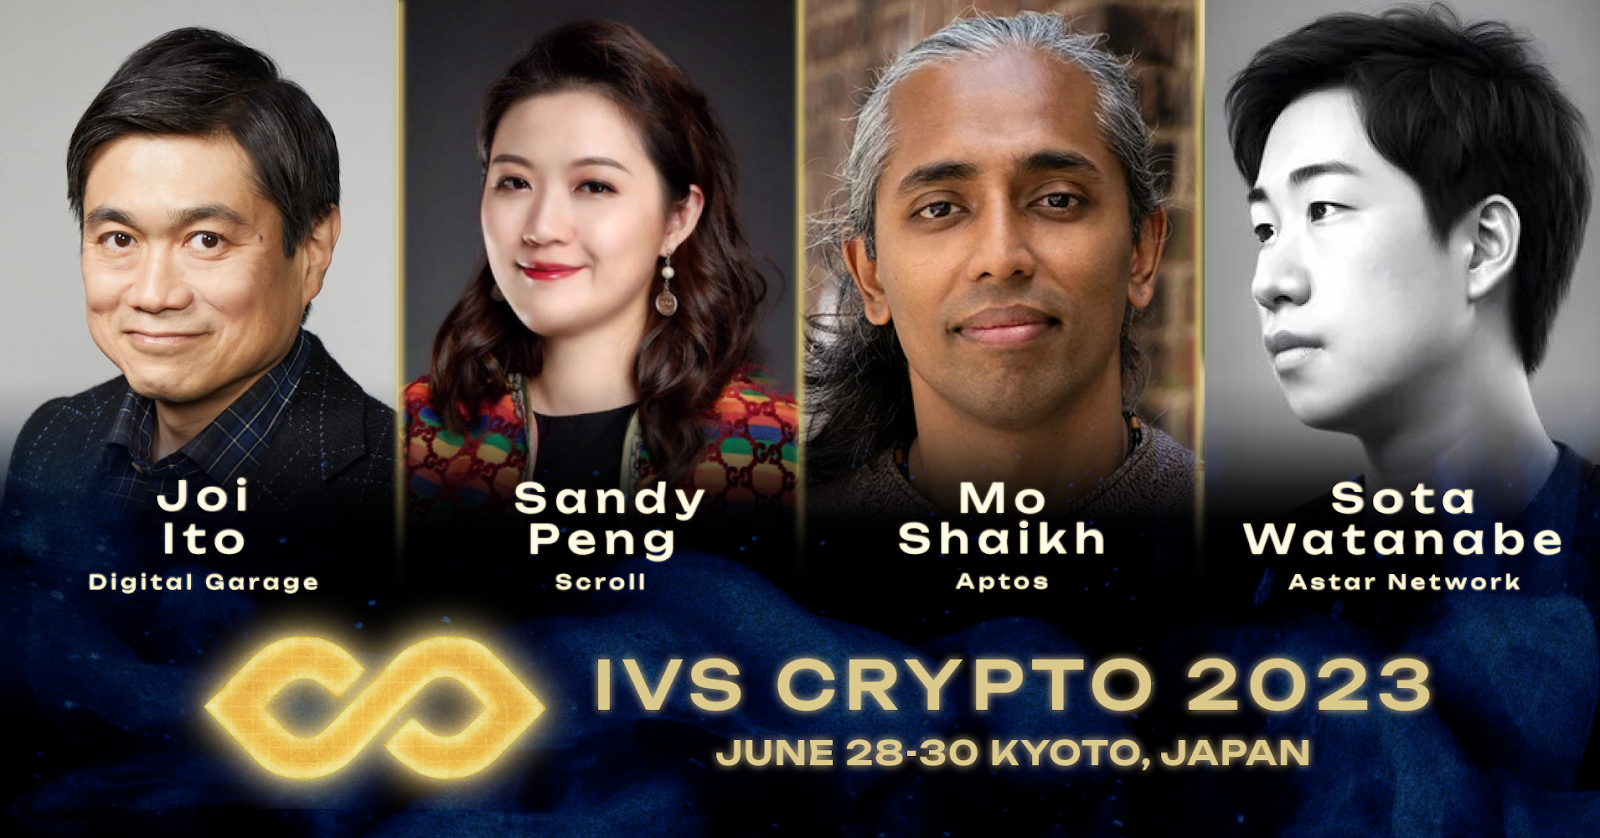 来到日本最大的国际加密峰会IVS Crypto 2023 KYOTO，开始一段新的Web3冒险